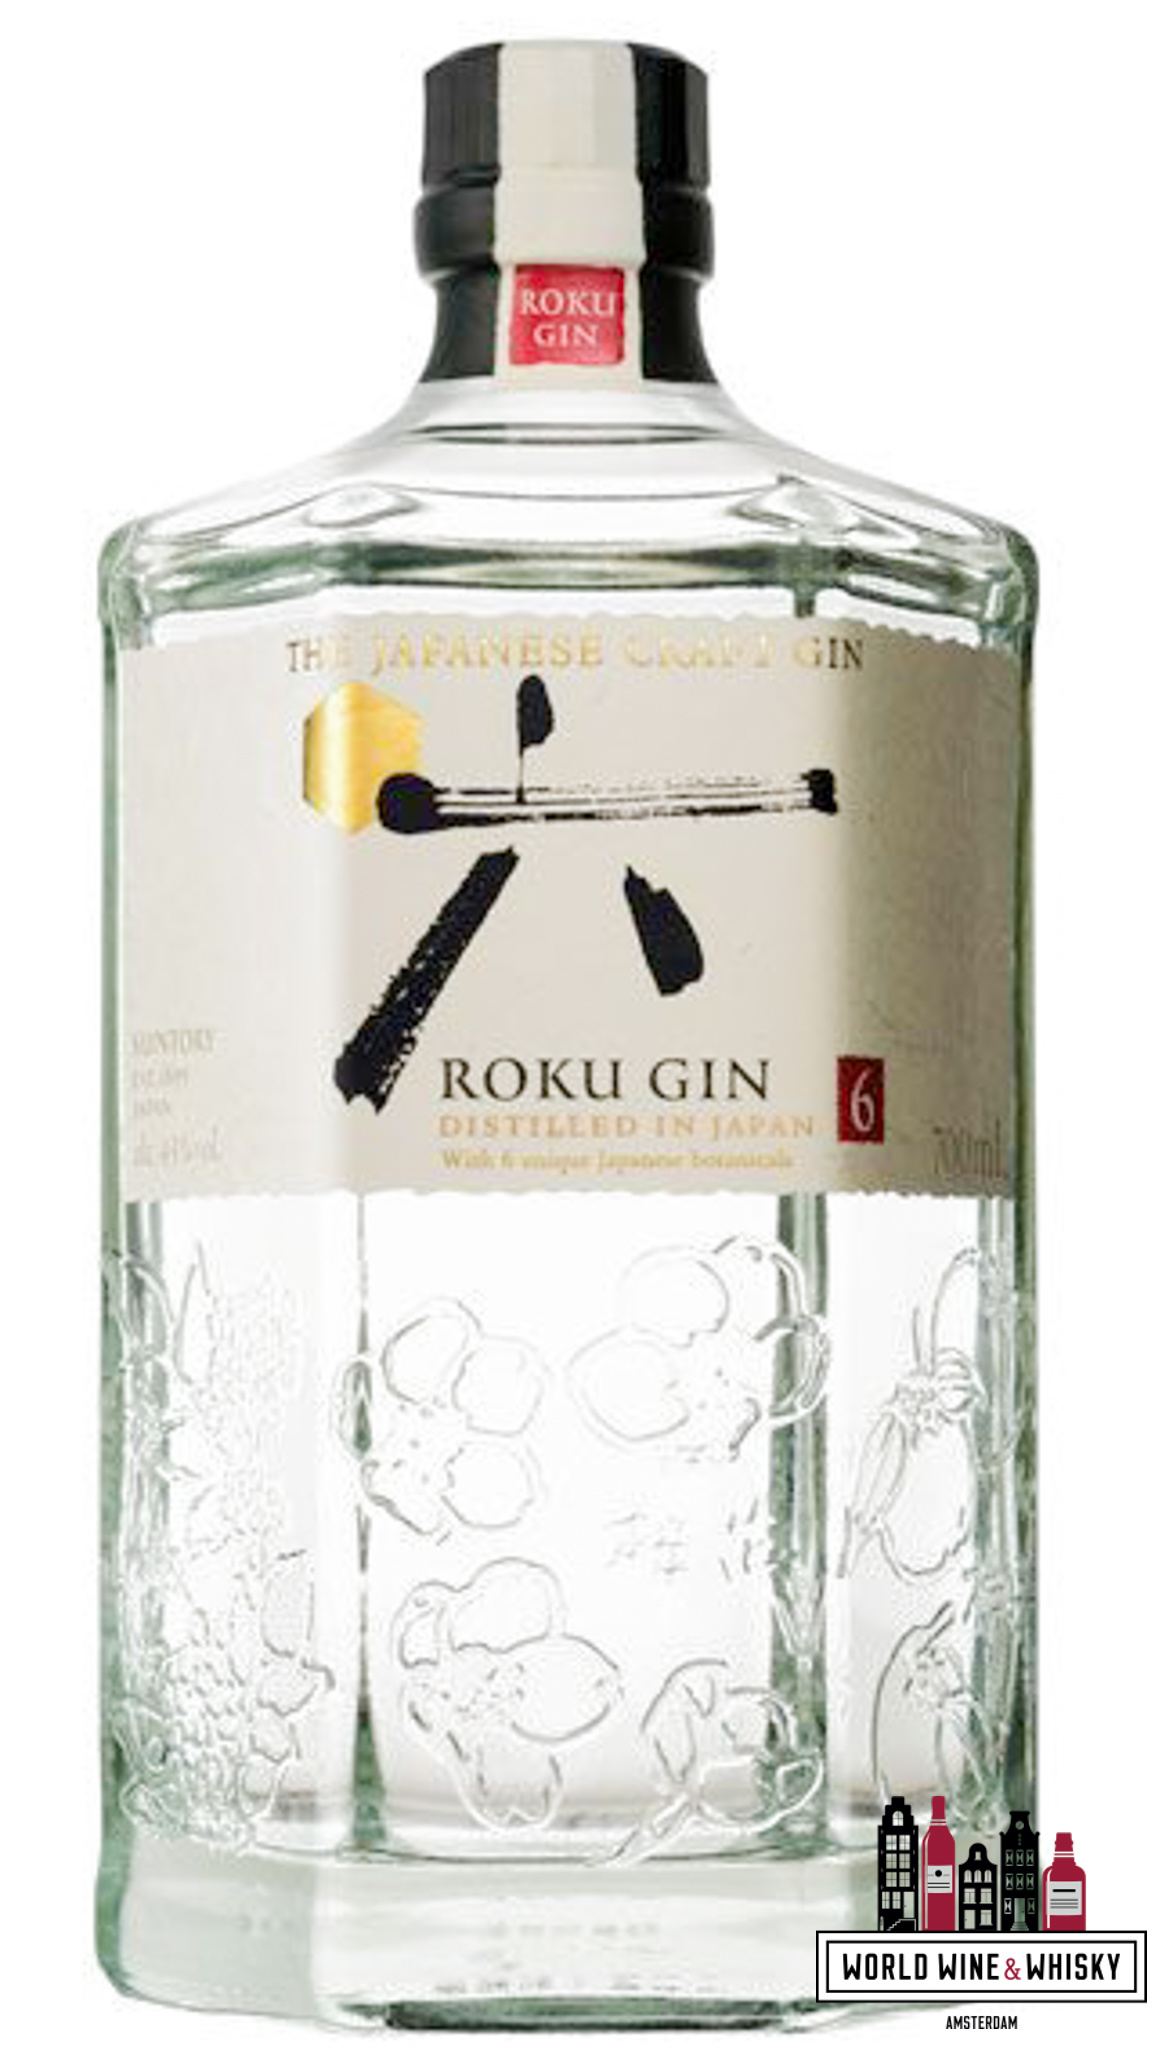 Roku Gin Roku Gin - The Japanese Craft Gin (Suntory) 43%